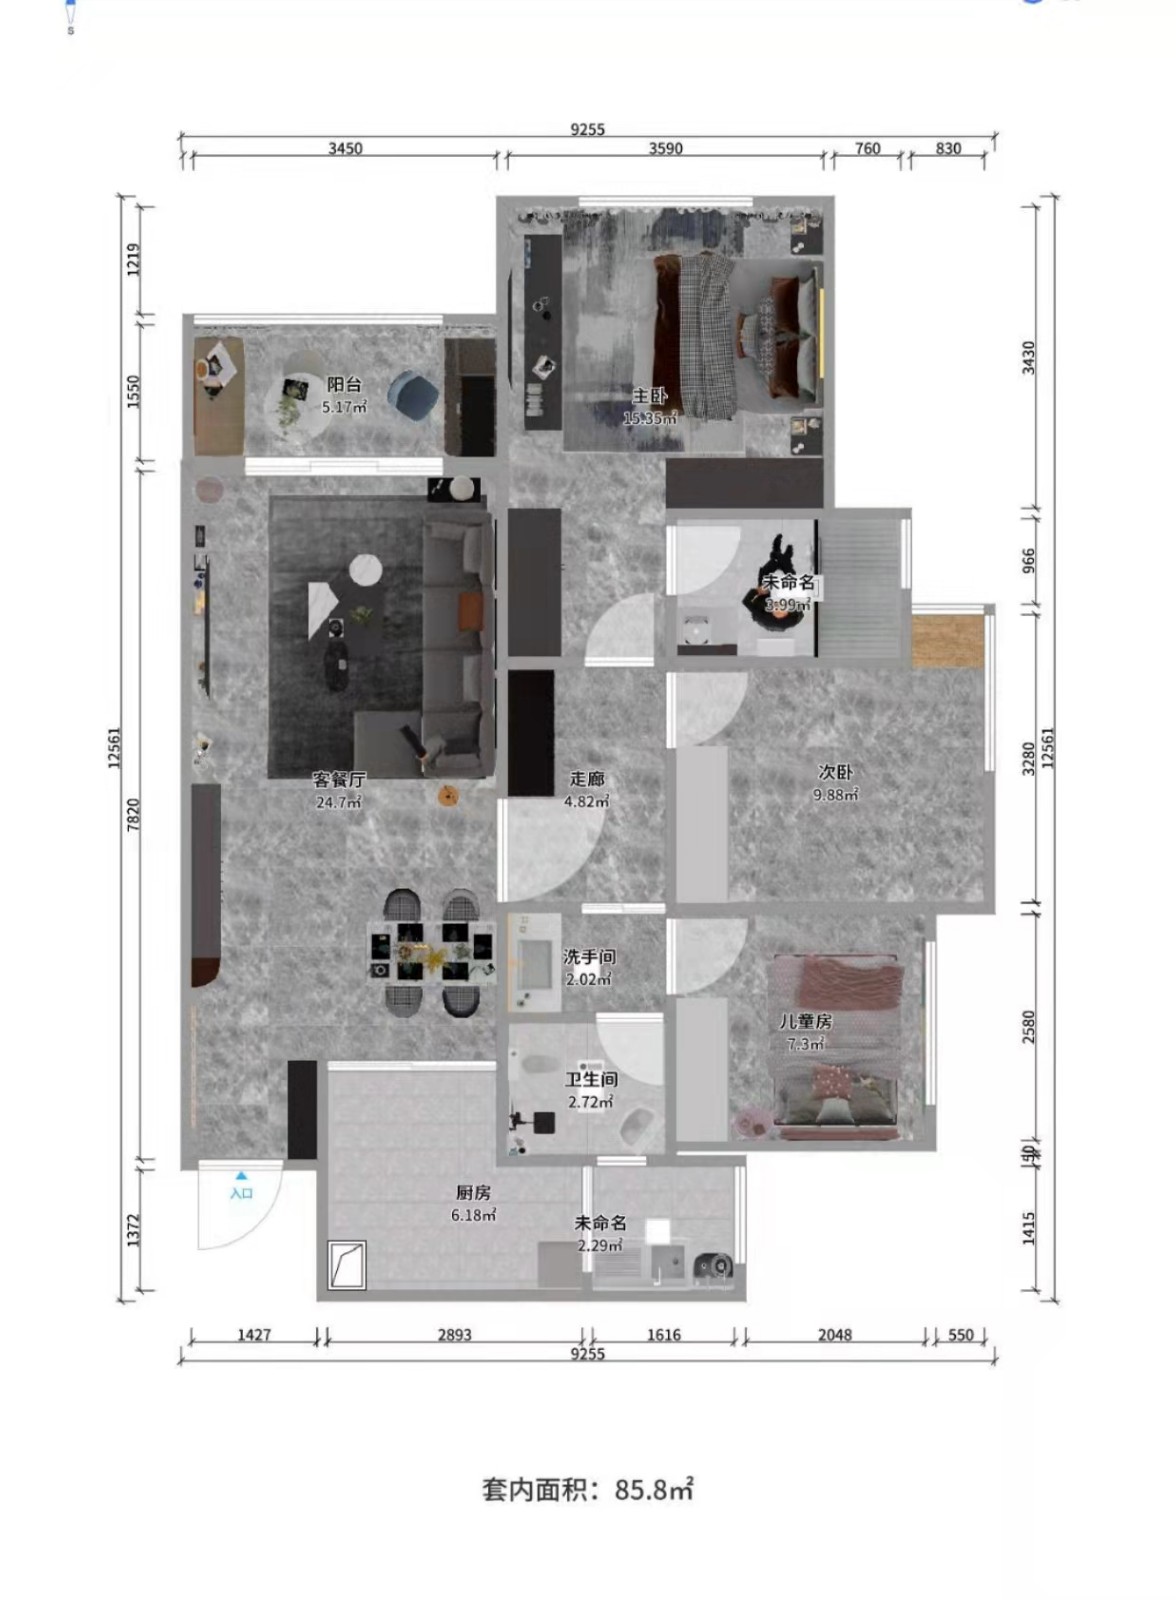 102现代三房装修效果图,生活的仪式感装修案例效果图-美广网(图1)